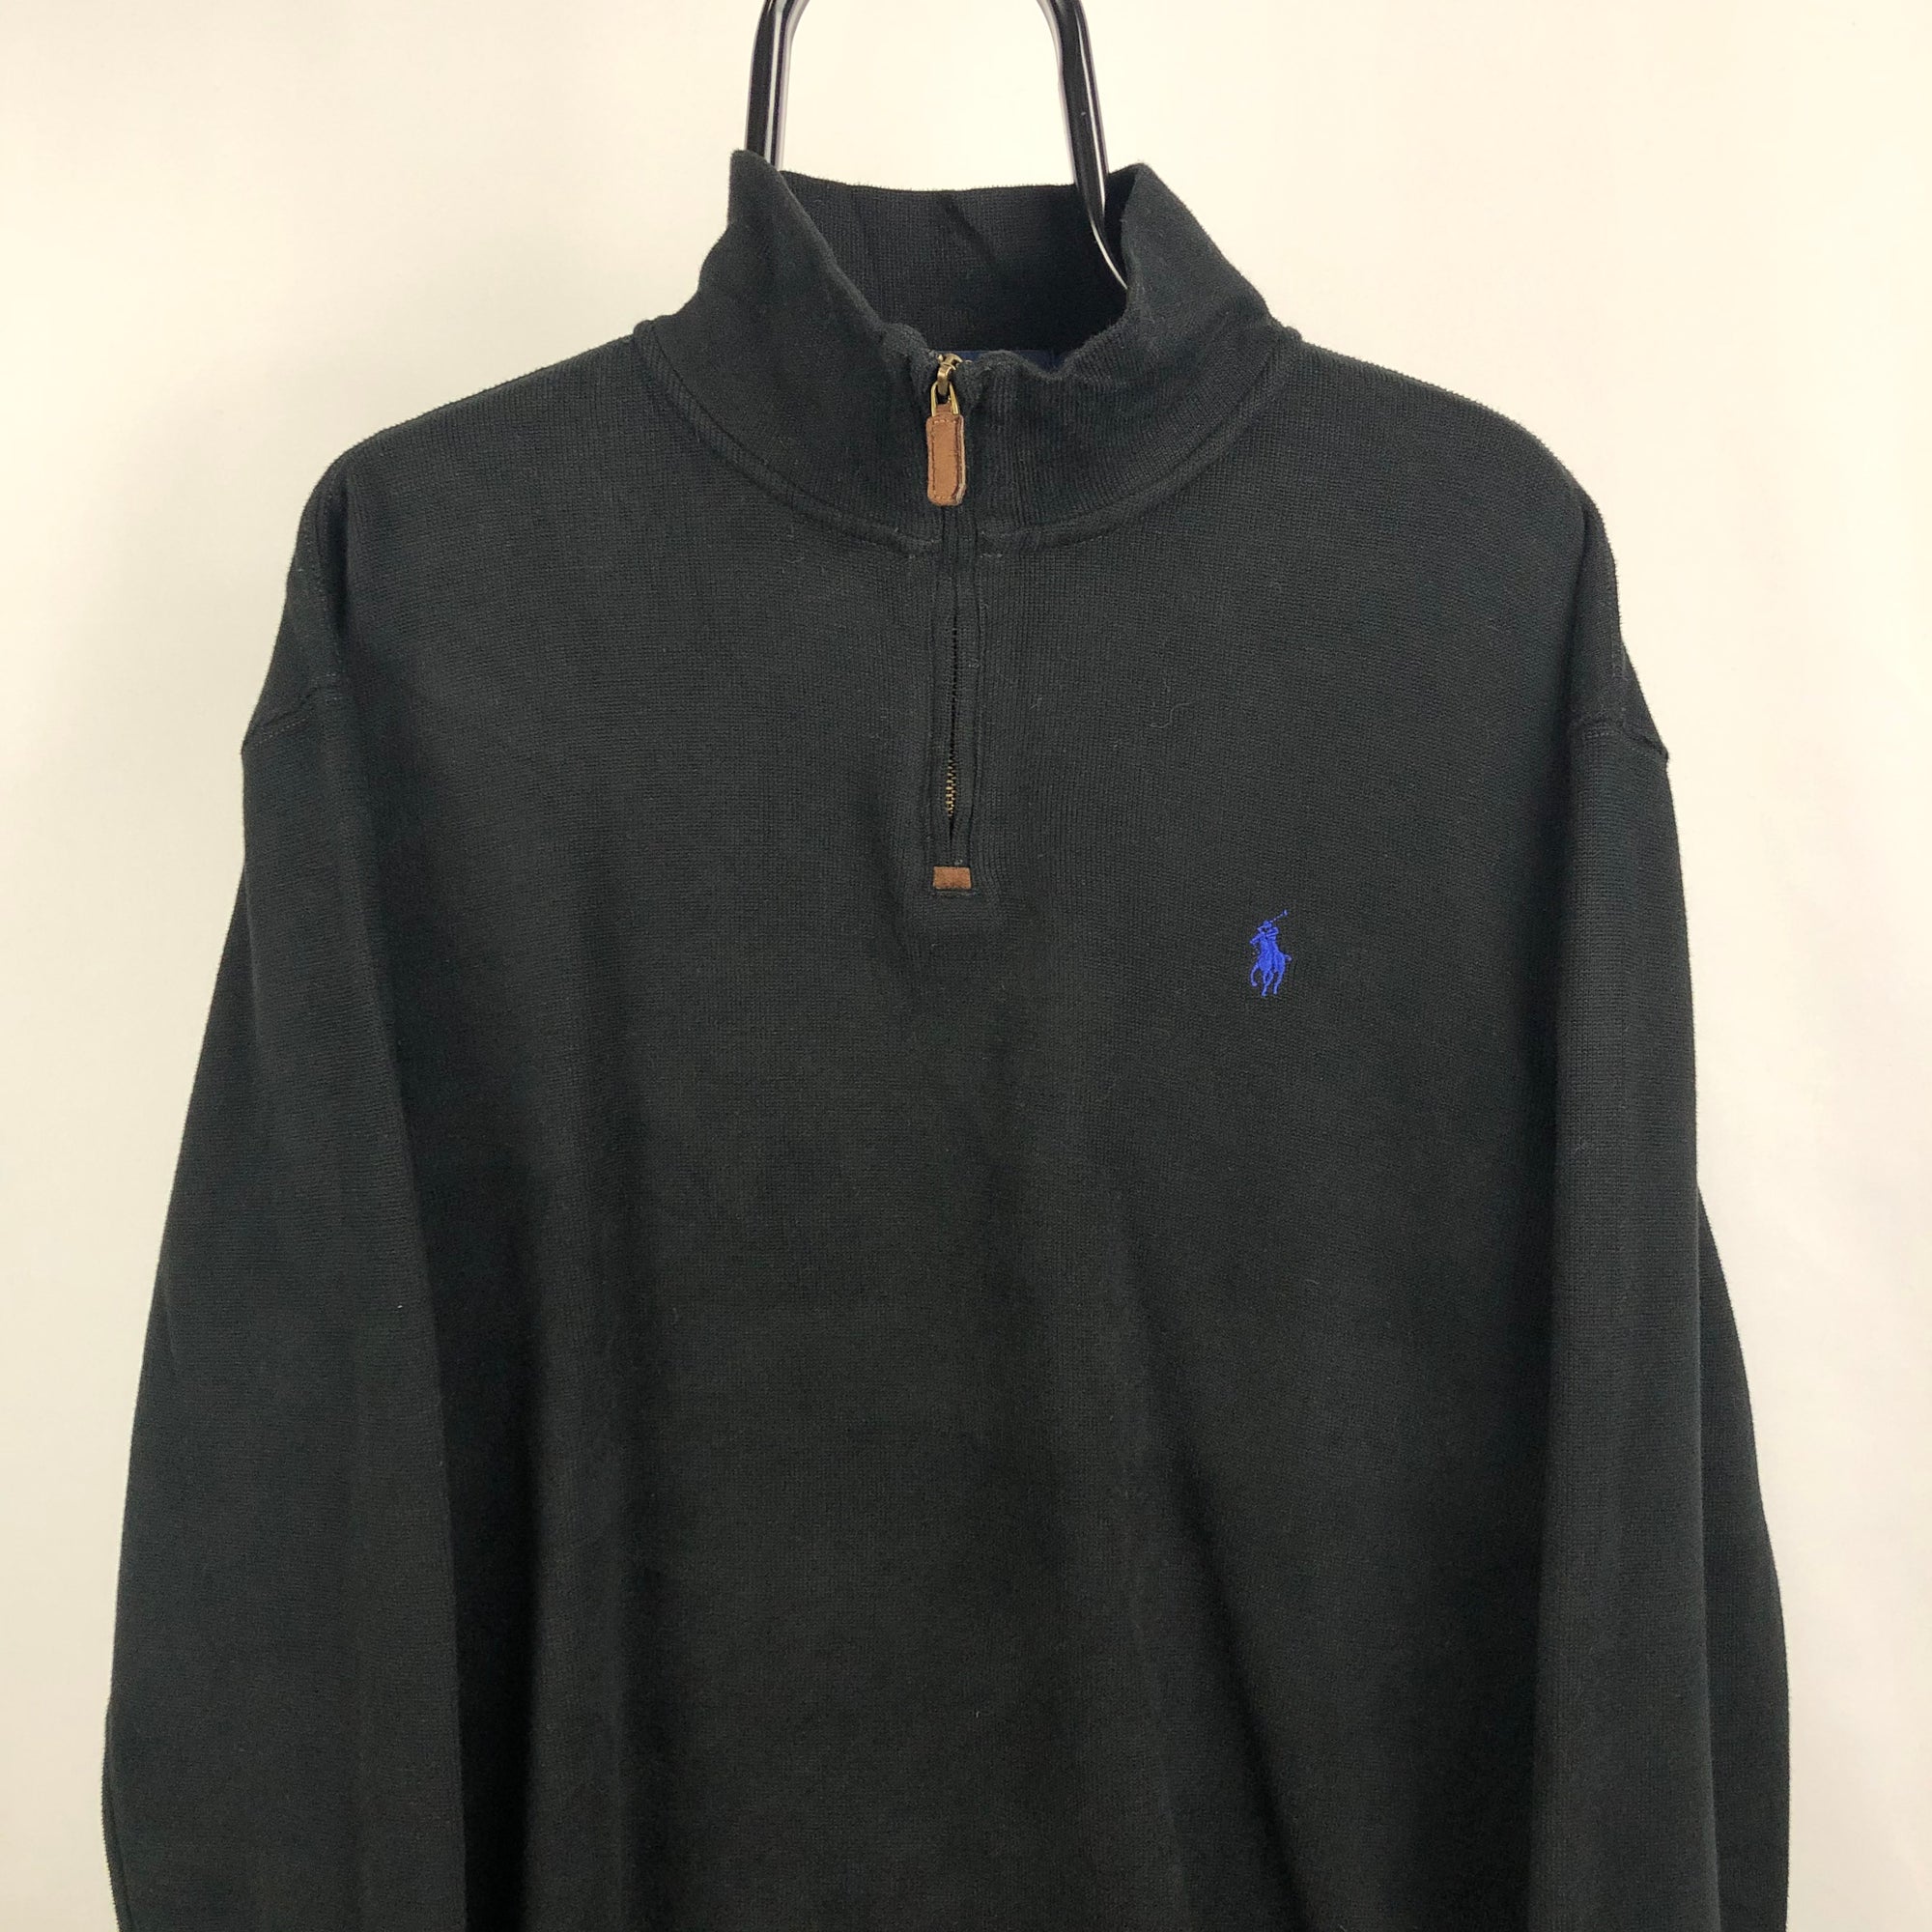 Polo Ralph Lauren 1/4 Zip Sweatshirt in Black - Men's XL/Women's XXL